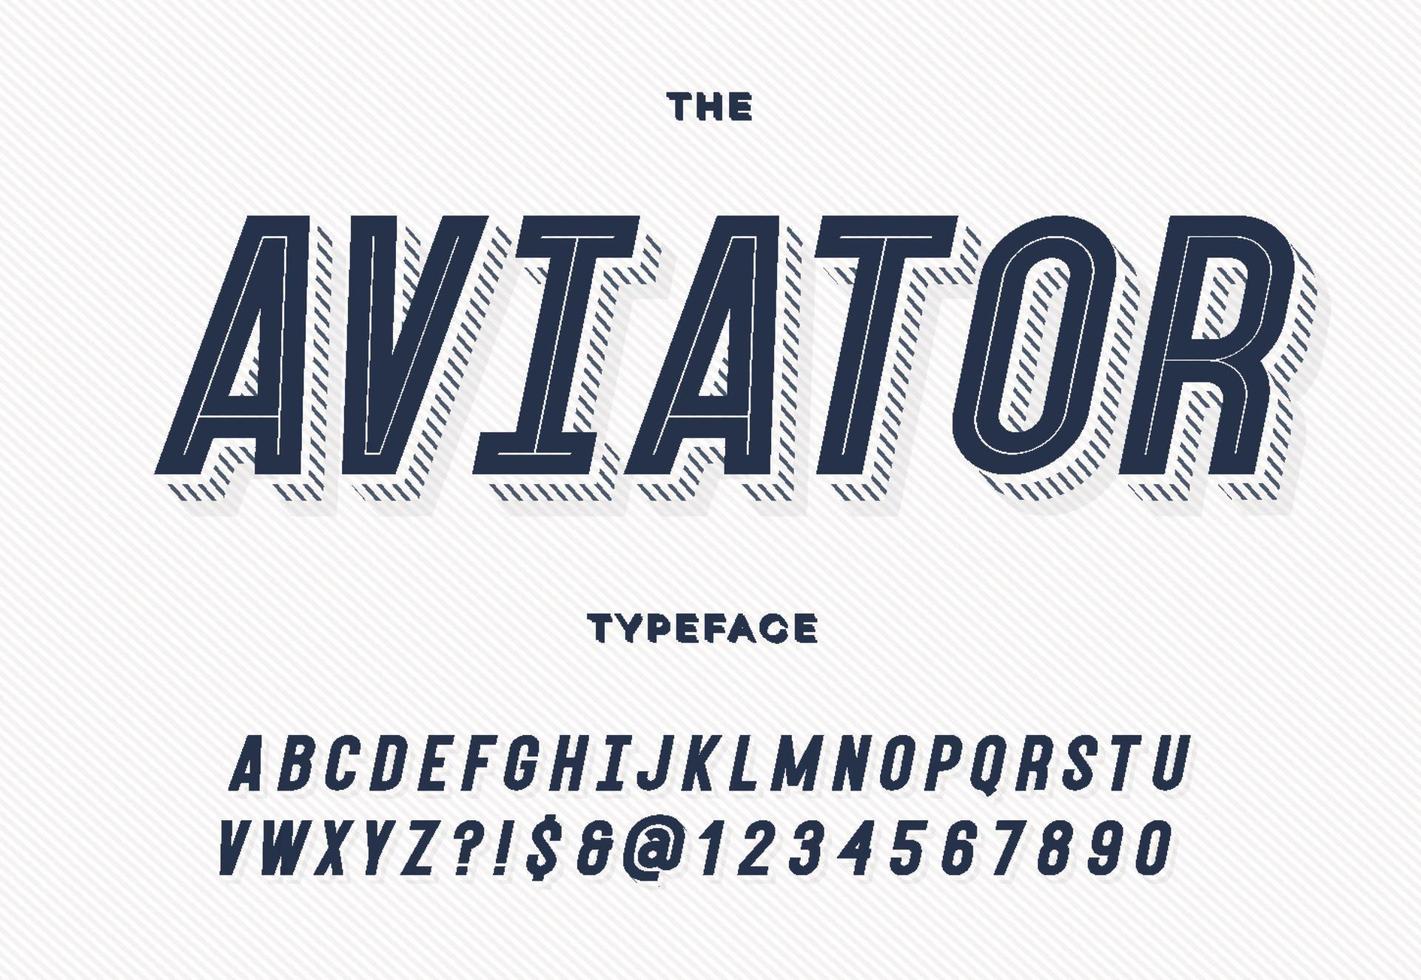 Aviator trendy typeface vector